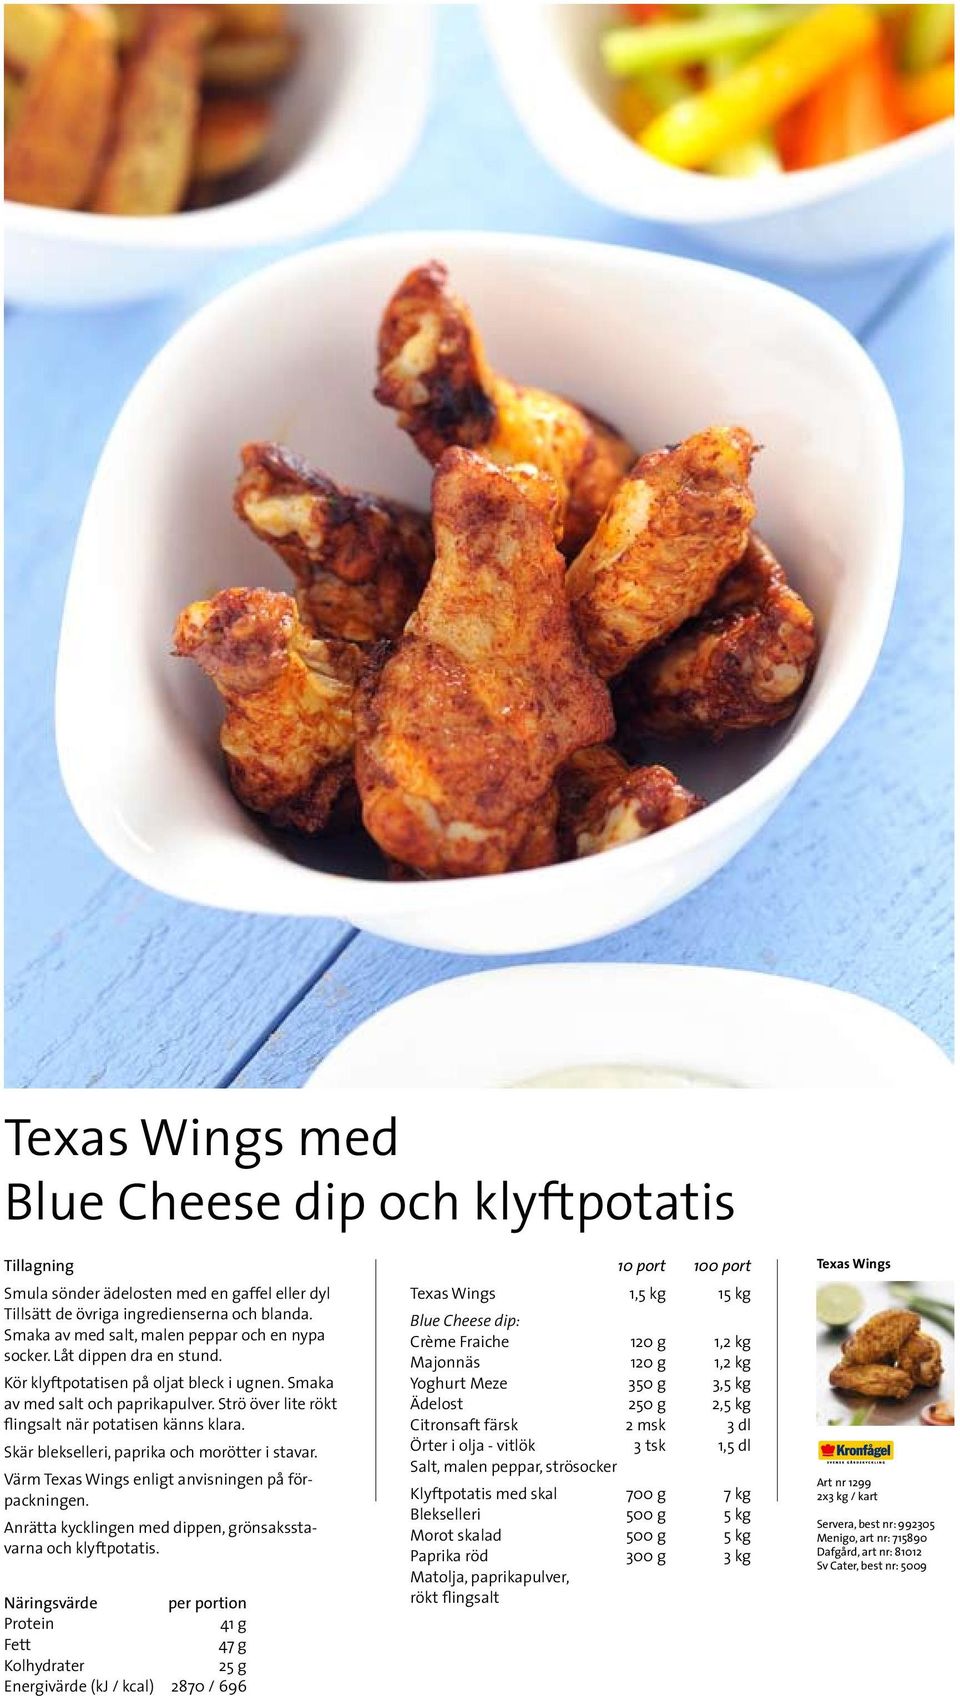 Skär blekselleri, paprika och morötter i stavar. Värm Texas Wings enligt anvisningen på förpackningen. Anrätta kycklingen med dippen, grönsaksstavarna och klyftpotatis.